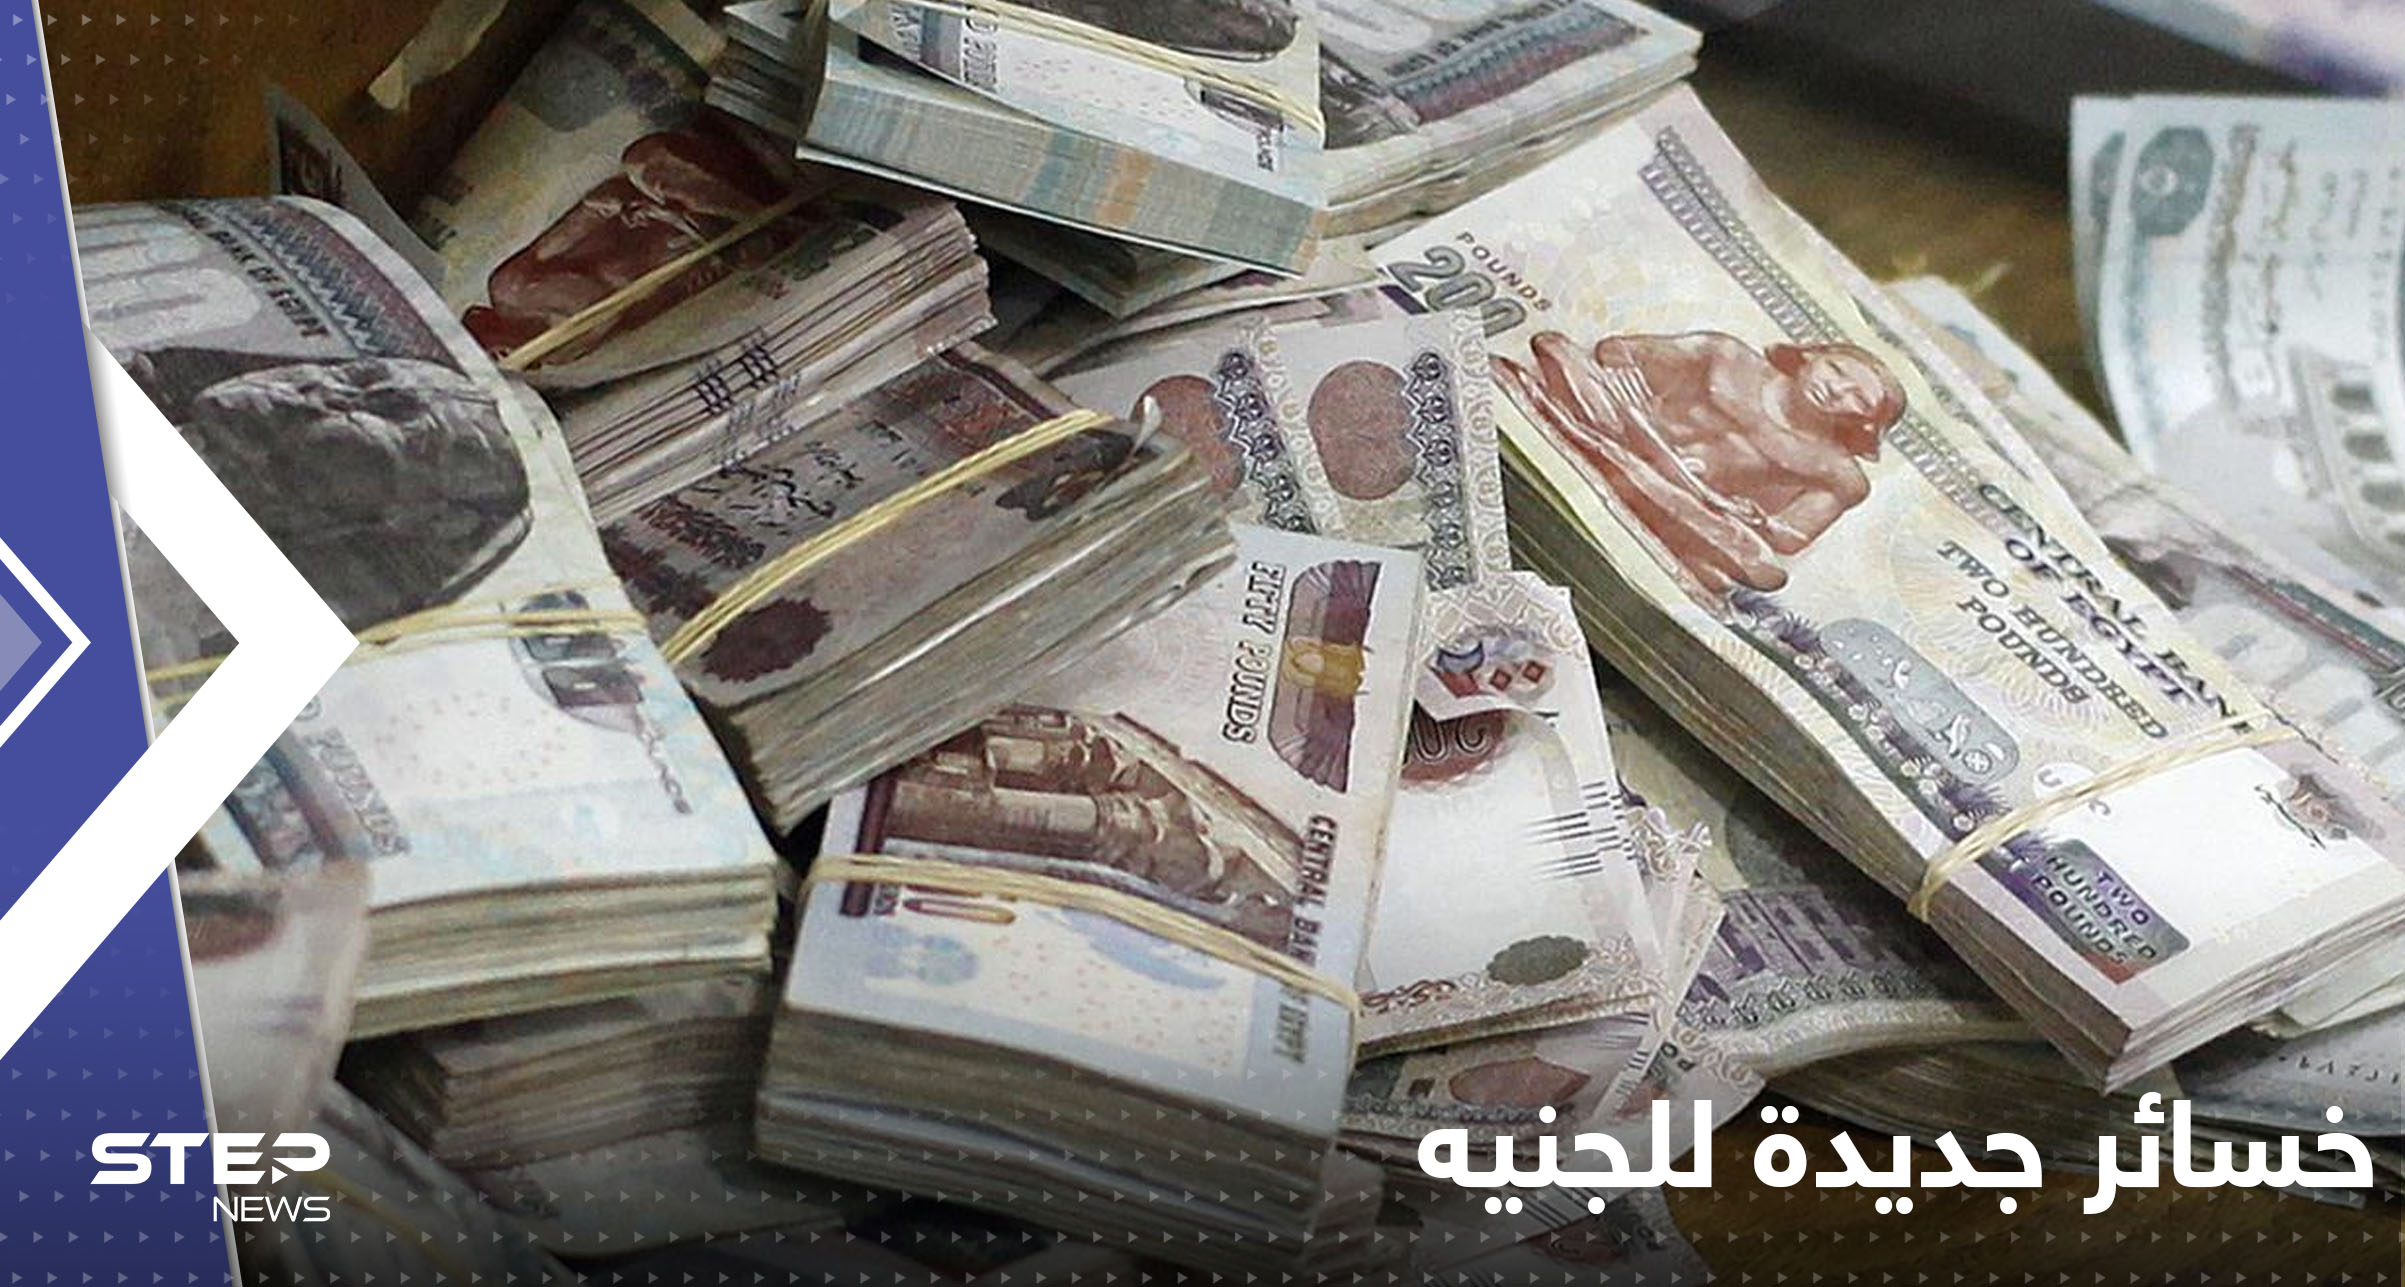 הפסדים חדשים ללירה... ומדינה ערבית חושפת את חששותיה לגבי סיכון כלכלי גדול במצרים